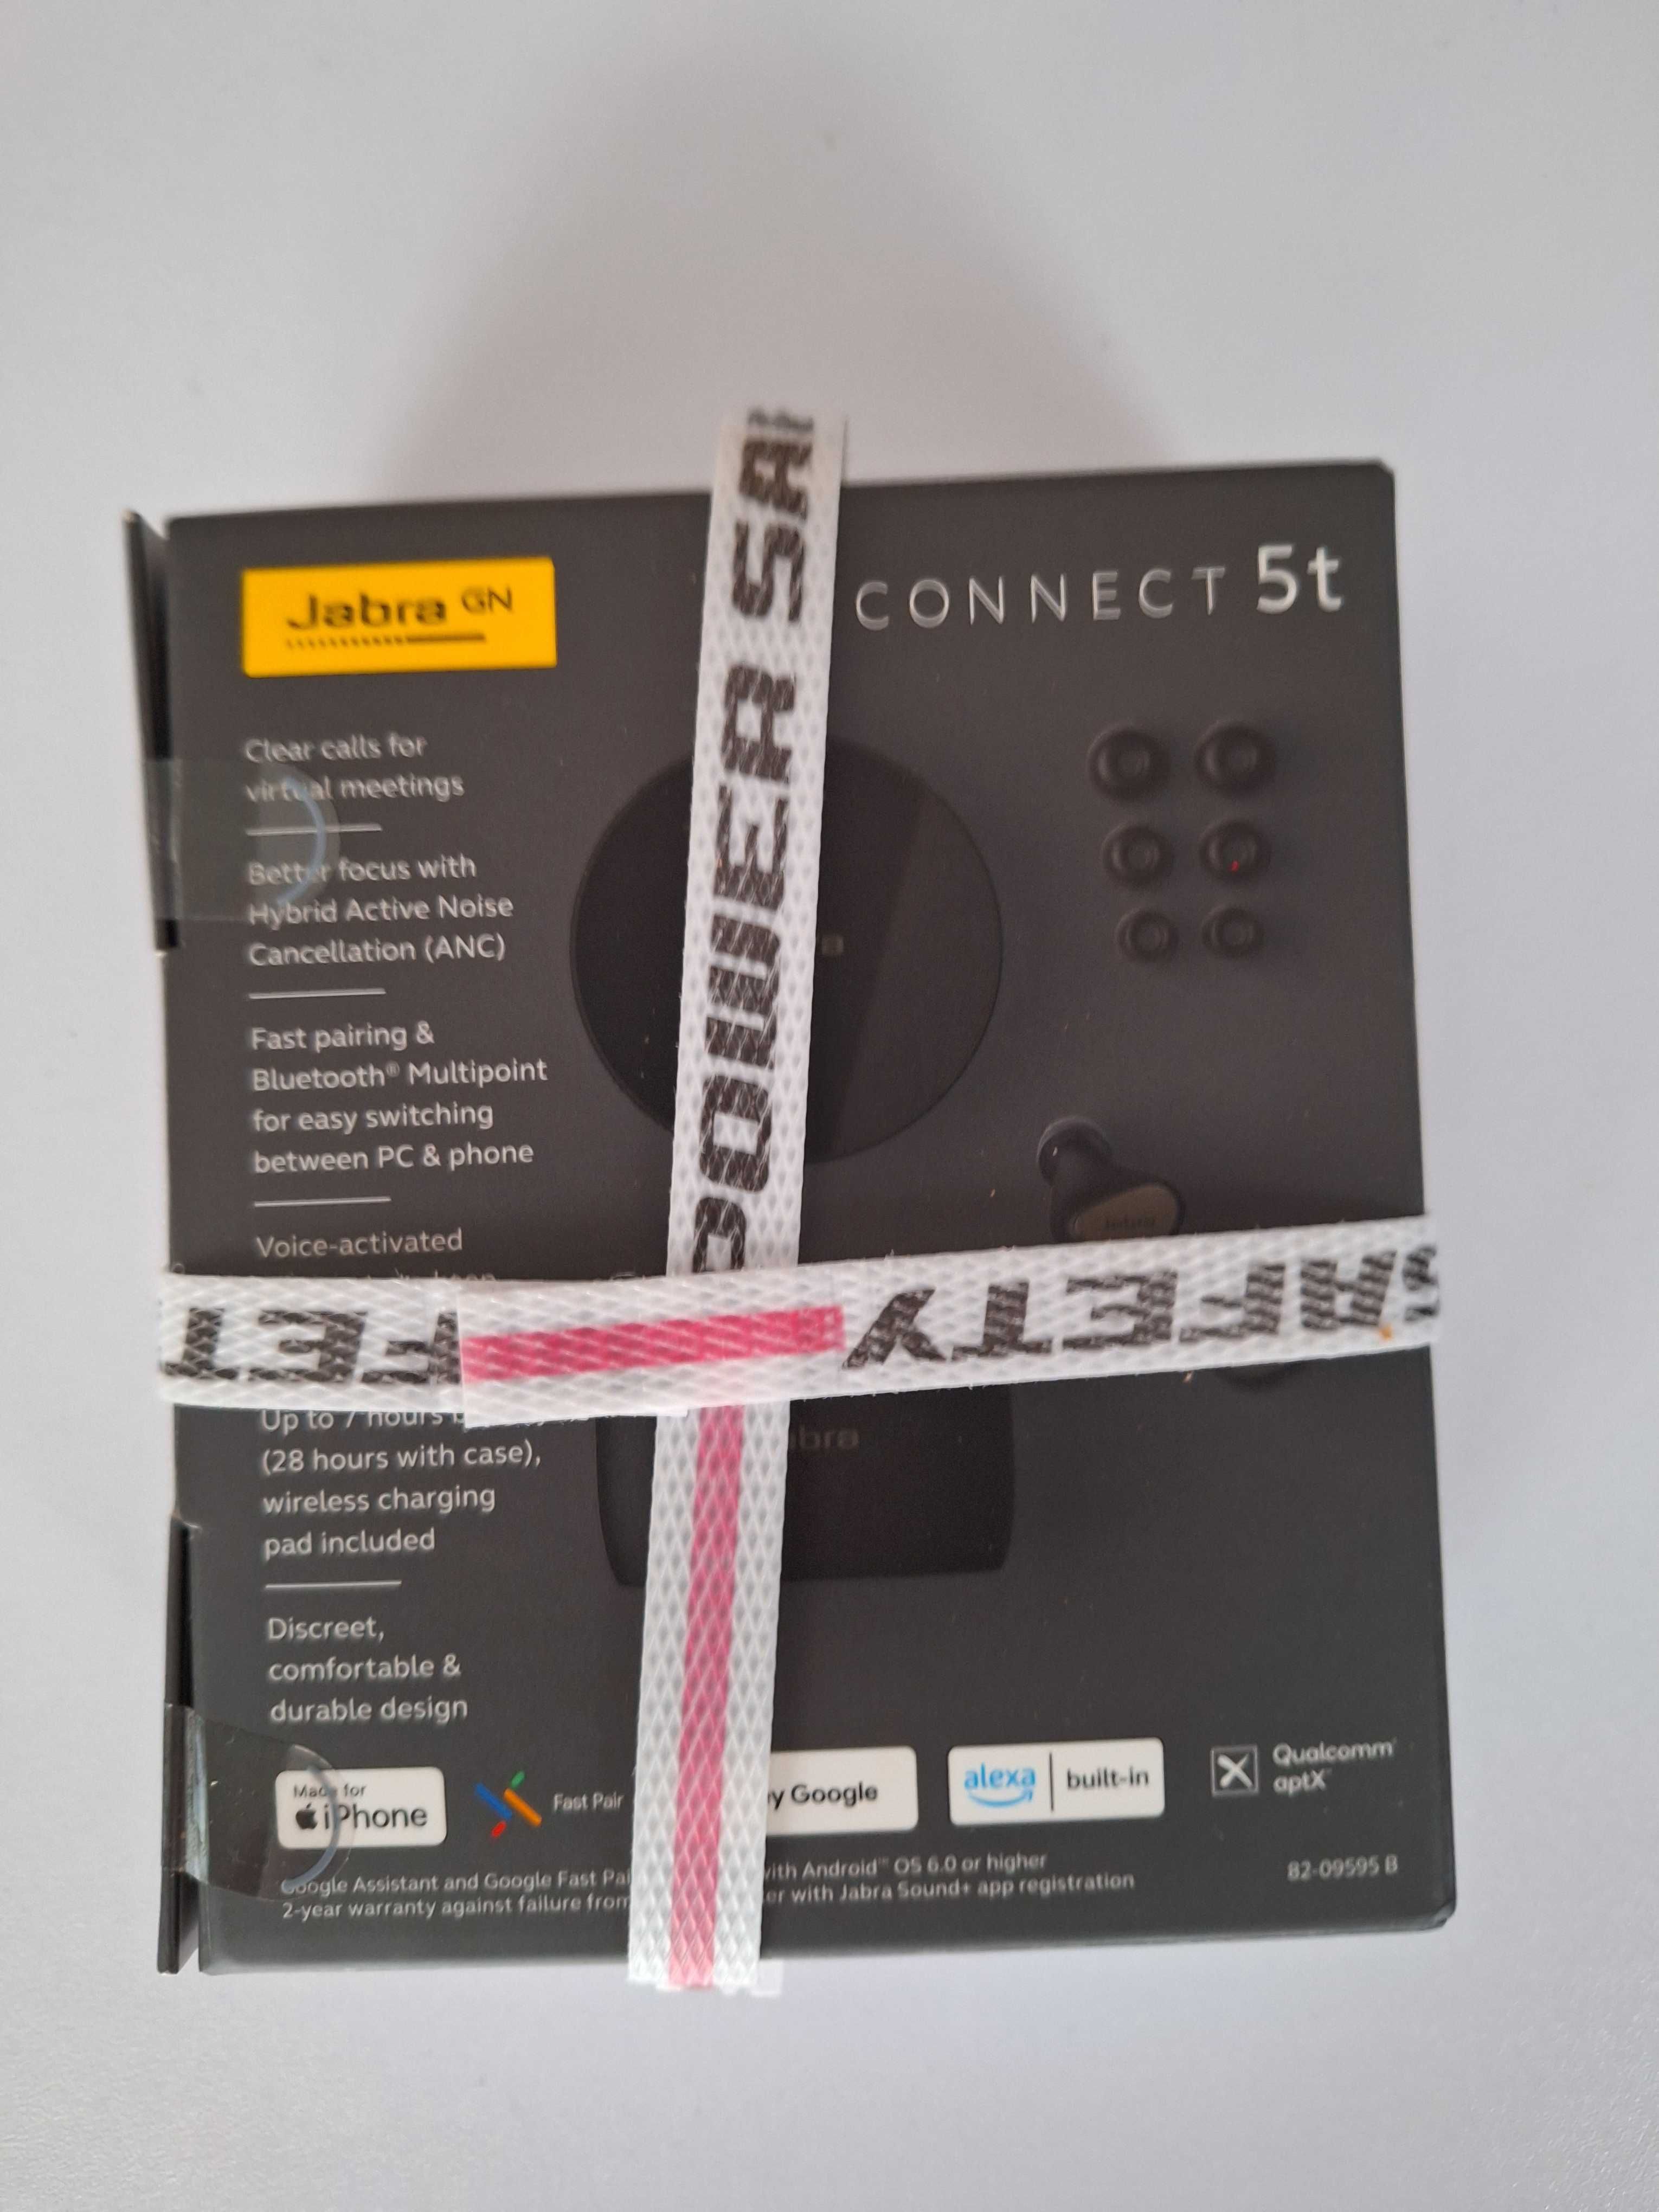 Bezprzewodowe słuchawki Jabra connect 5g